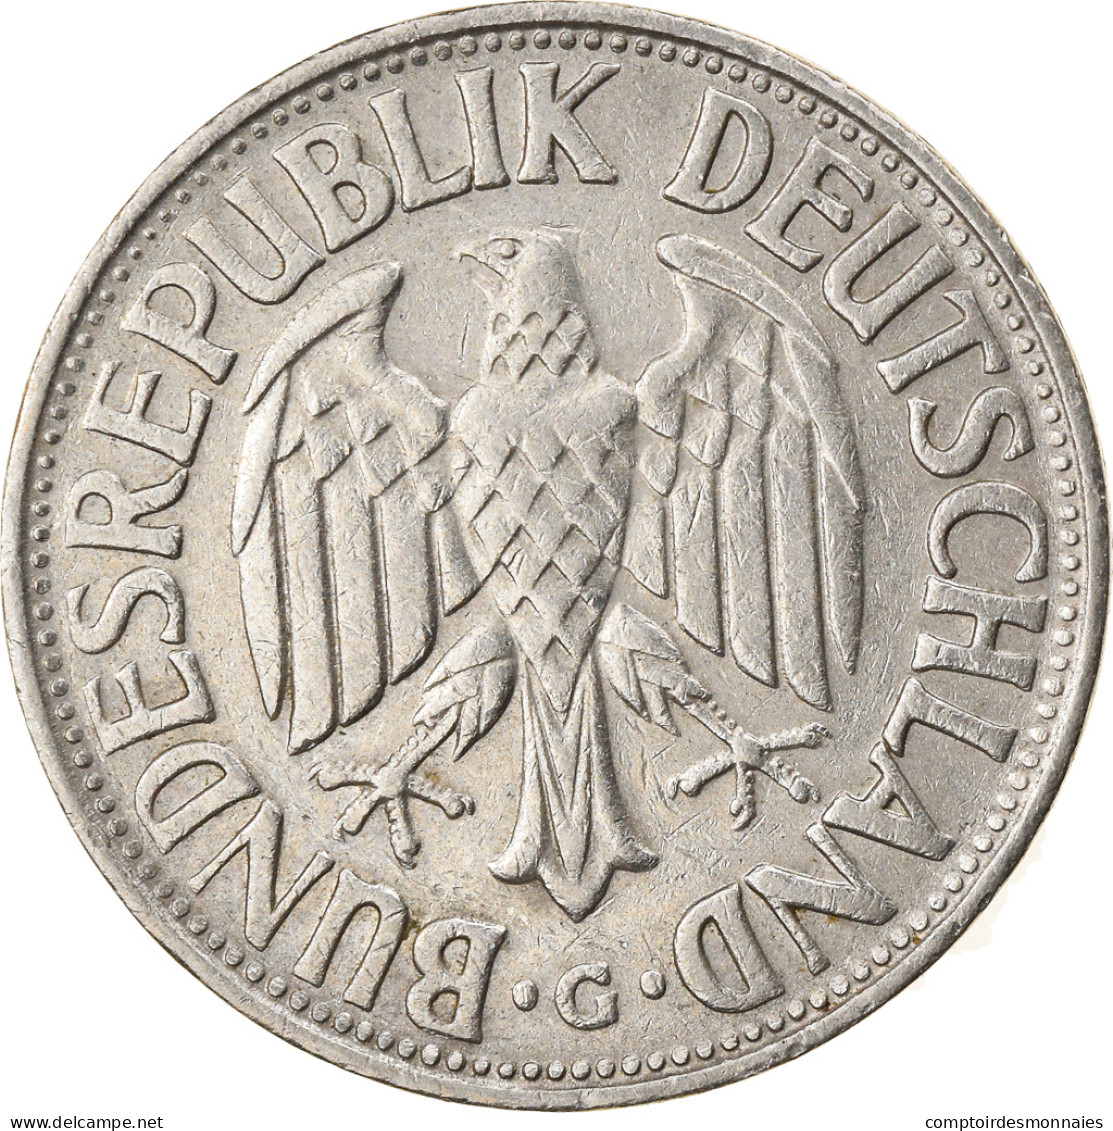 Monnaie, République Fédérale Allemande, Mark, 1957, Karlsruhe, TTB - 1 Mark